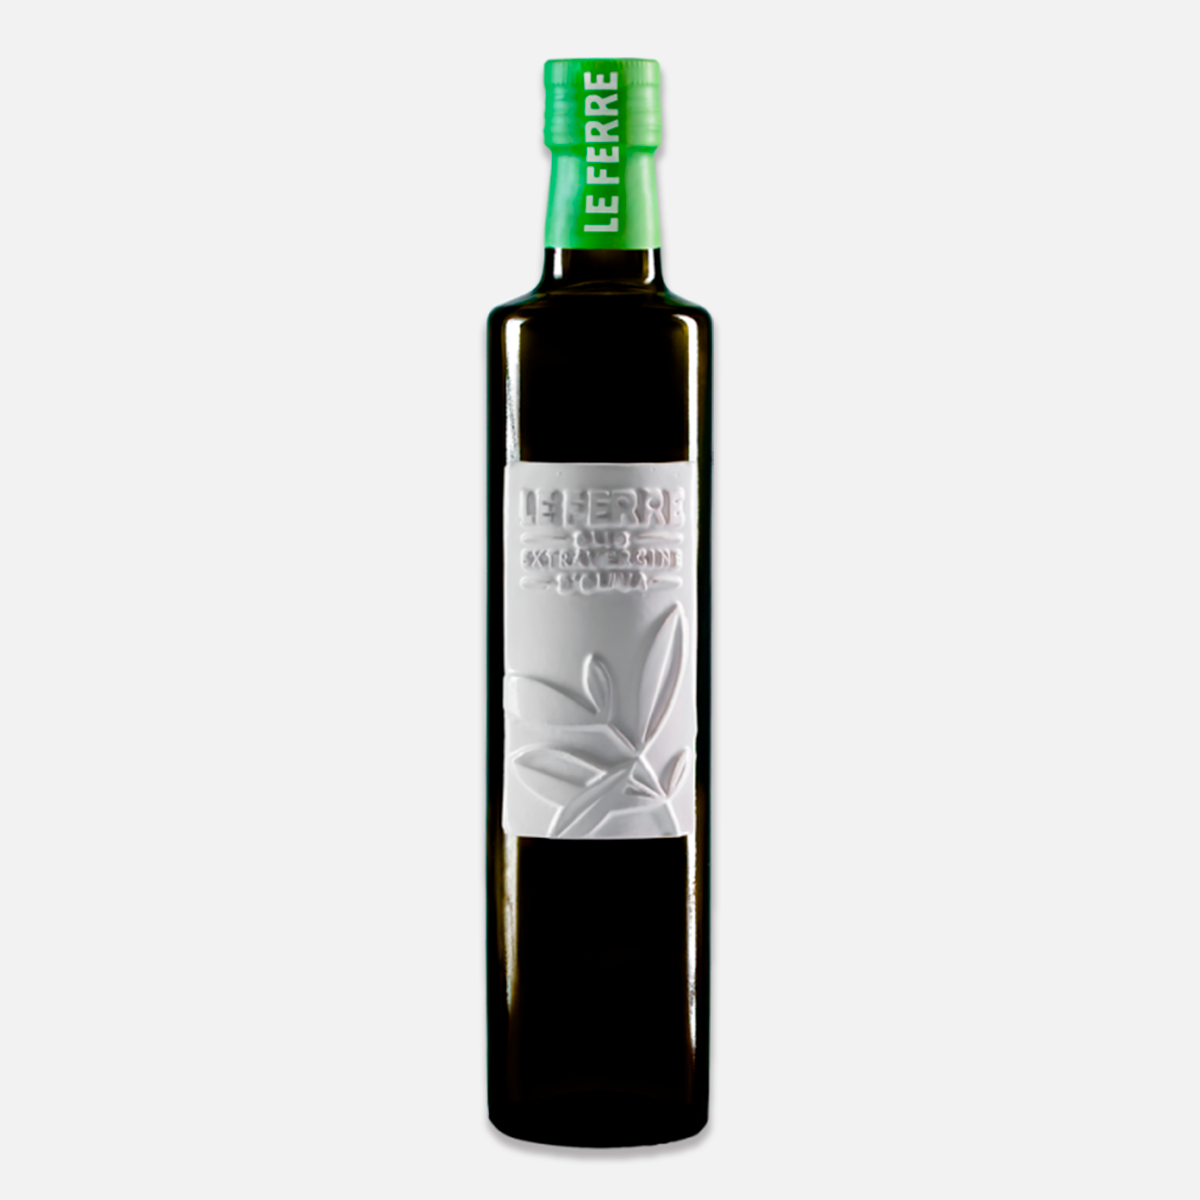 Étiquette céramique d'huile d'olive extra vierge : huile d'olive italienne de première qualité